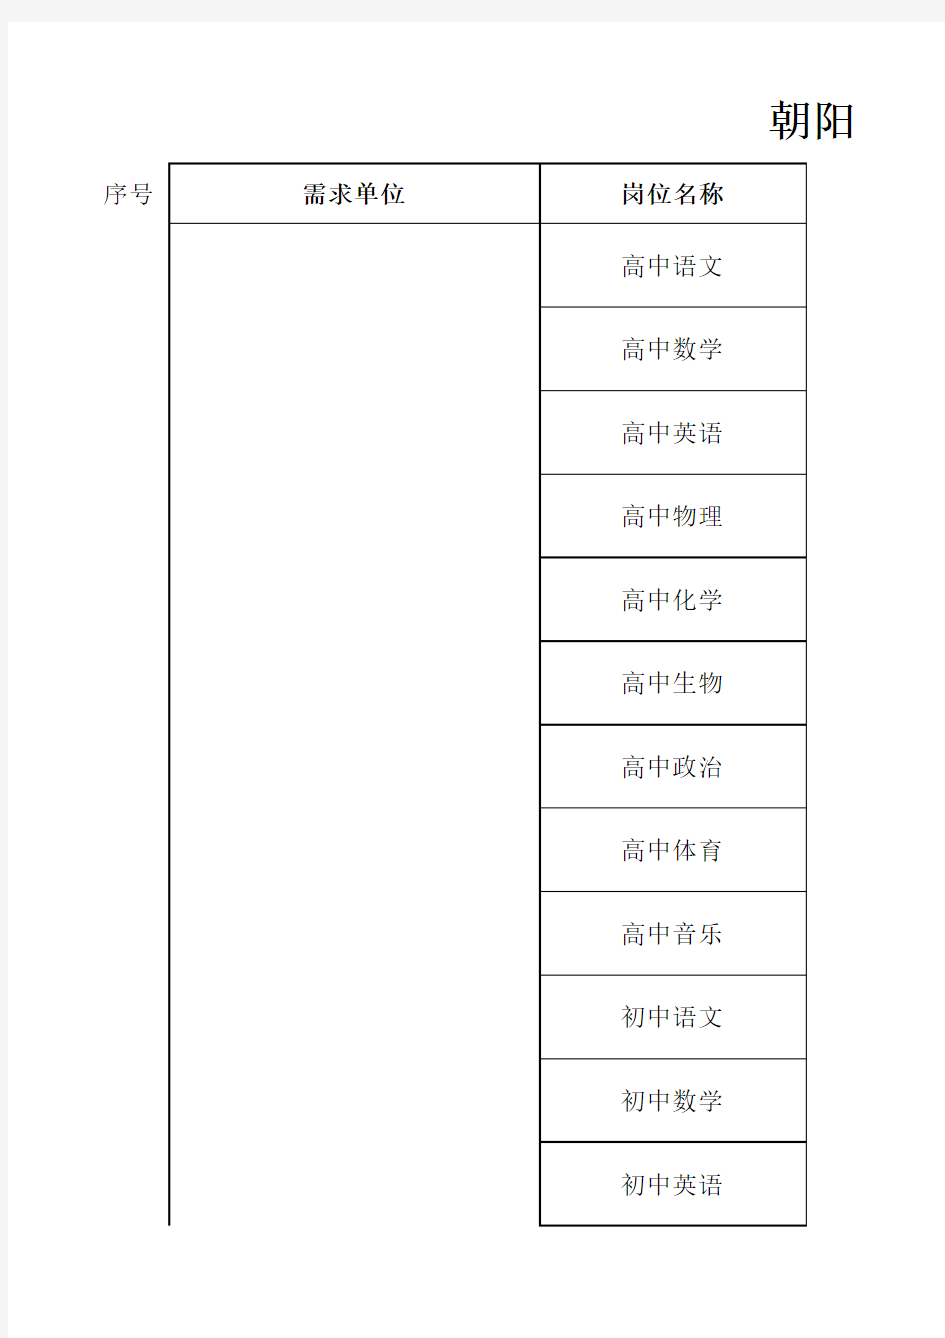 11.22朝阳教委2015届北京高校毕业生教育专场双选会岗位需求意向